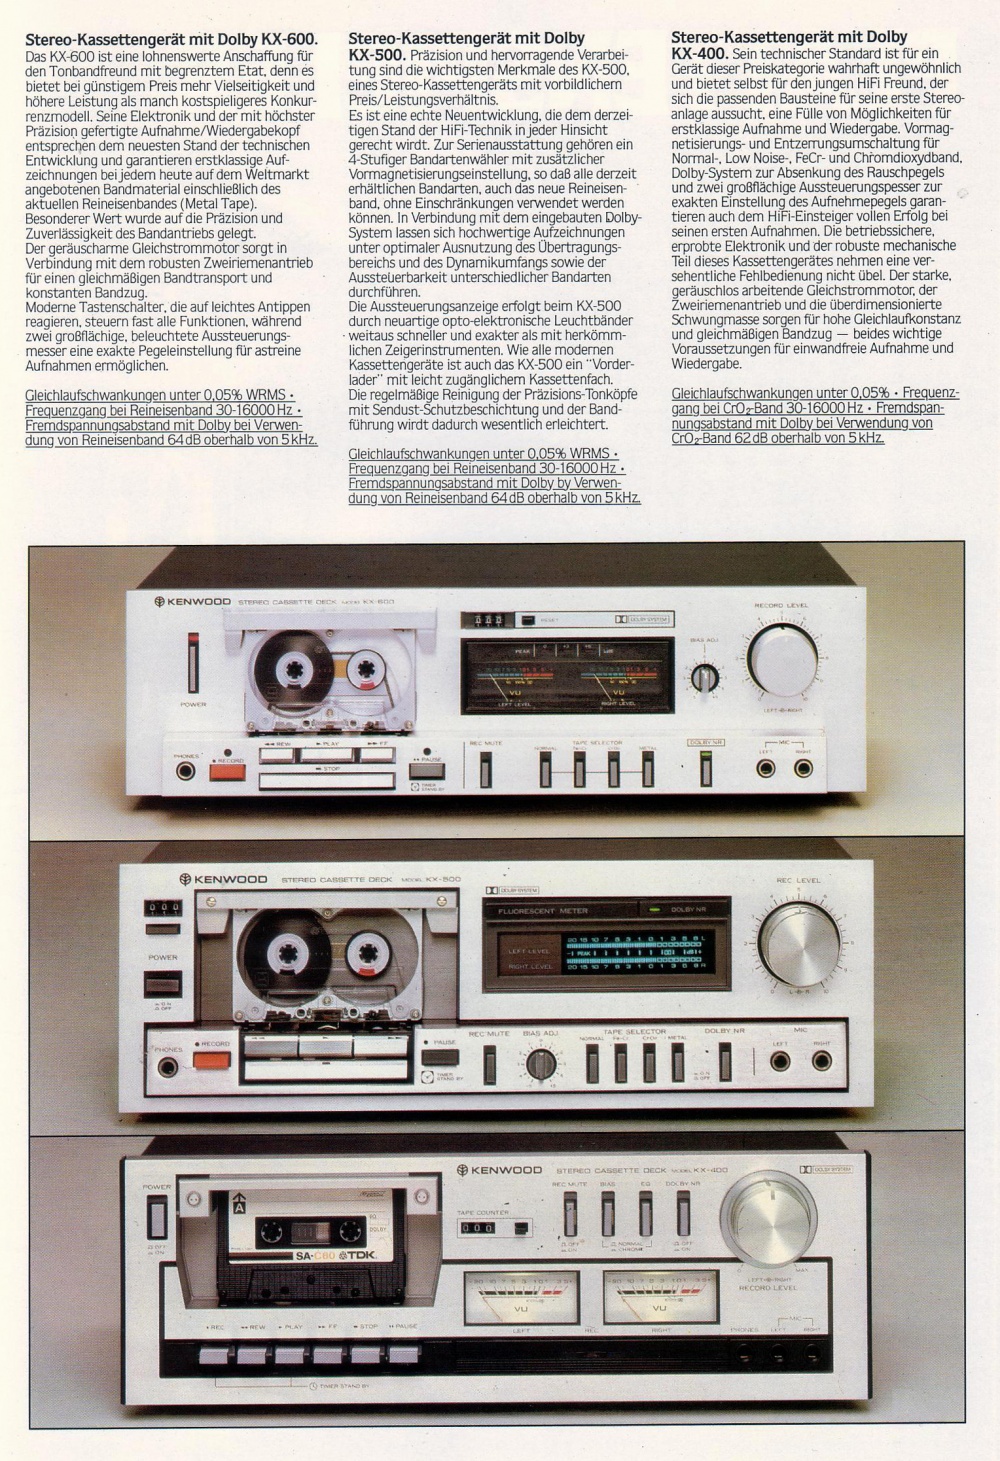 Kenwood kx-600 lecteur cassette vinyles et hifi vintage compiègne